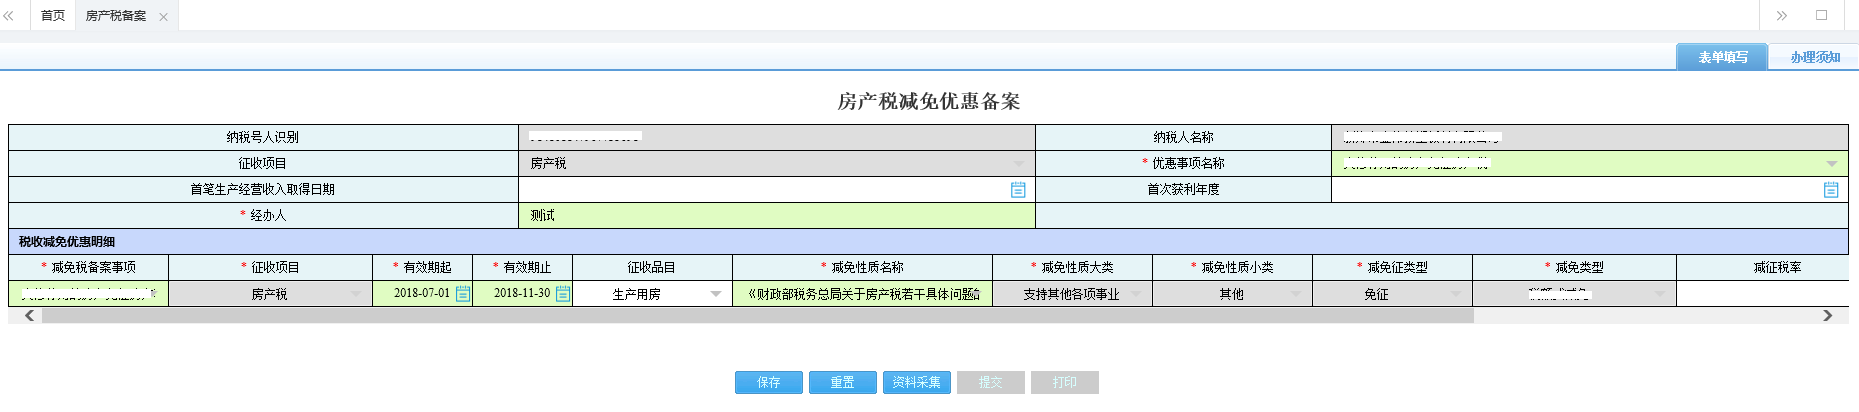 河南省电子税务局城镇土地使用税备案